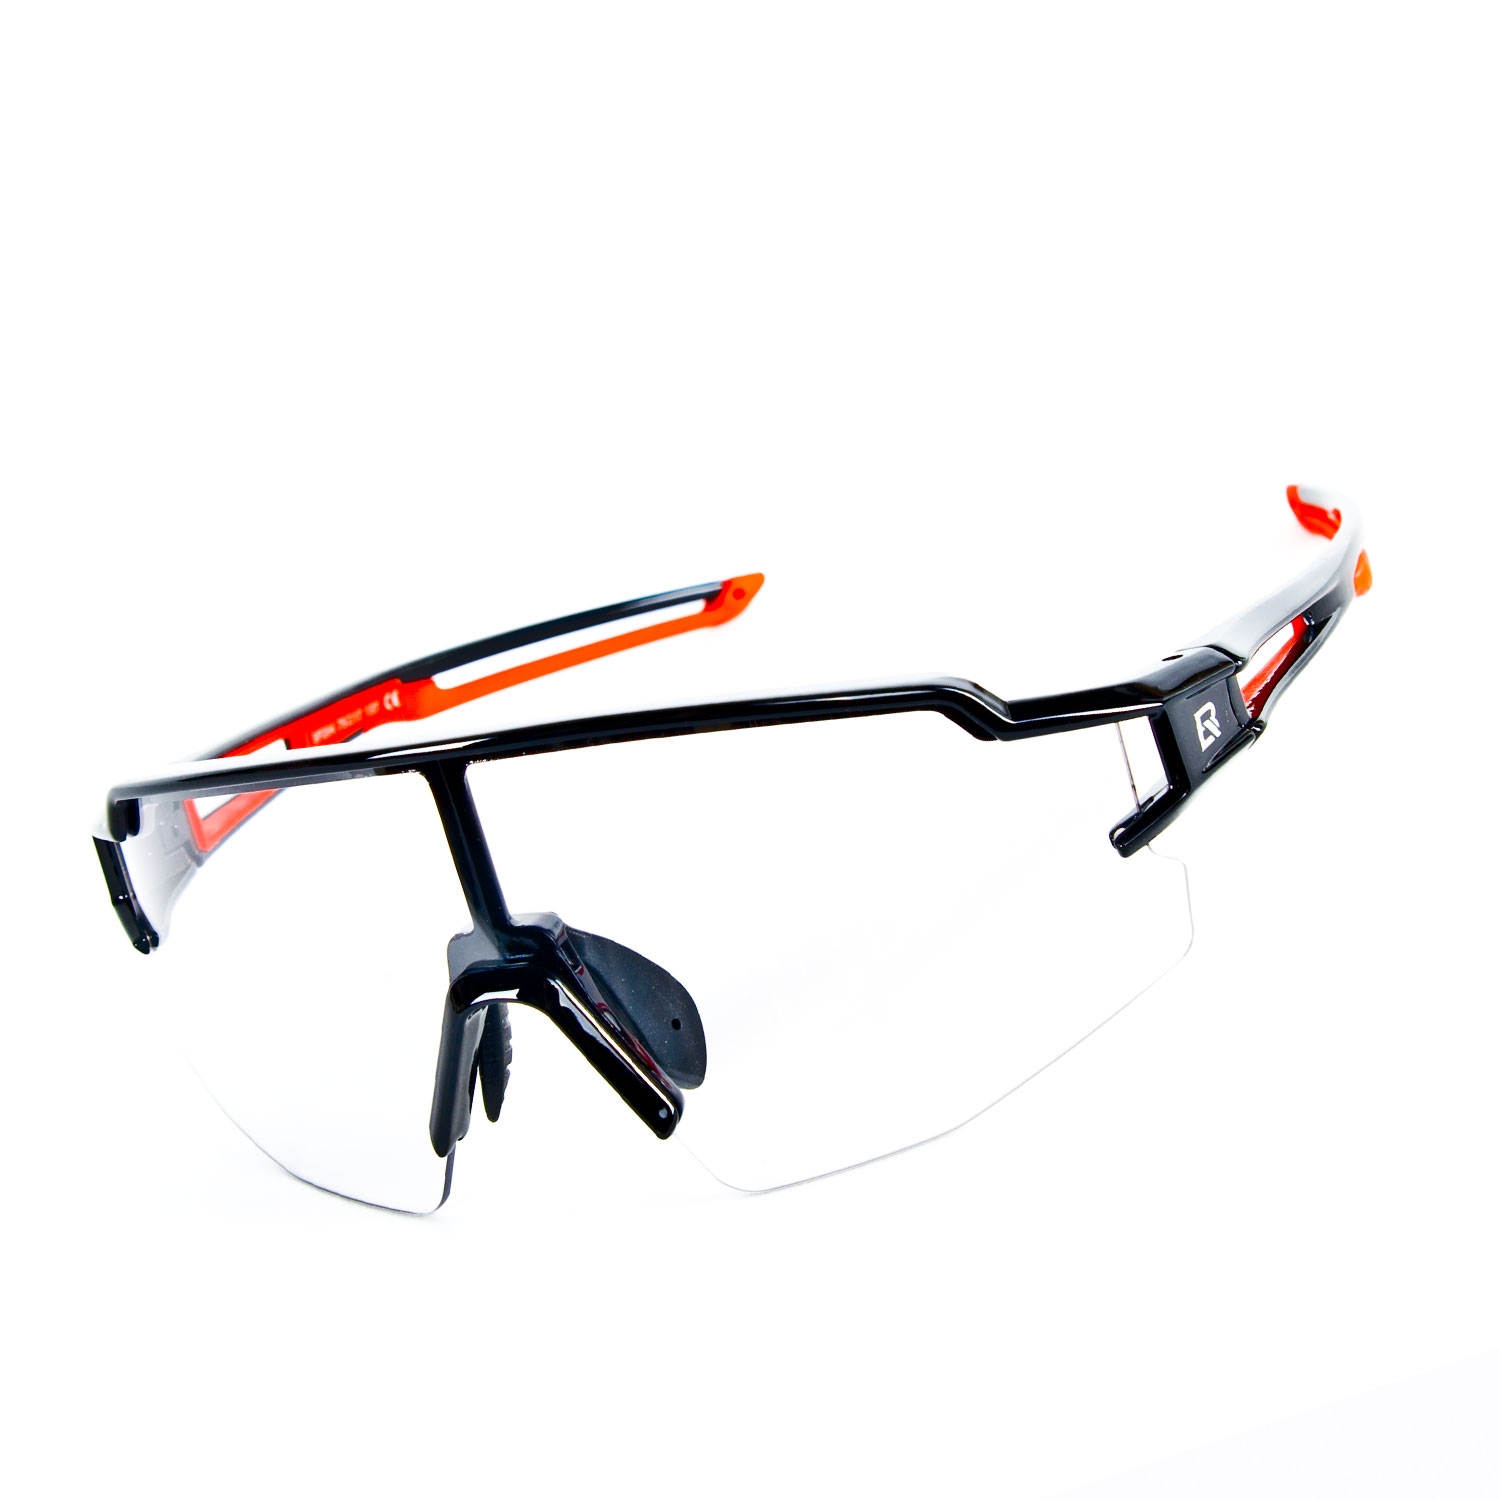 Zdjęcia - Okulary przeciwsłoneczne Rockbros 10173 okulary rowerowe / sportowe z fotochromem czarne 